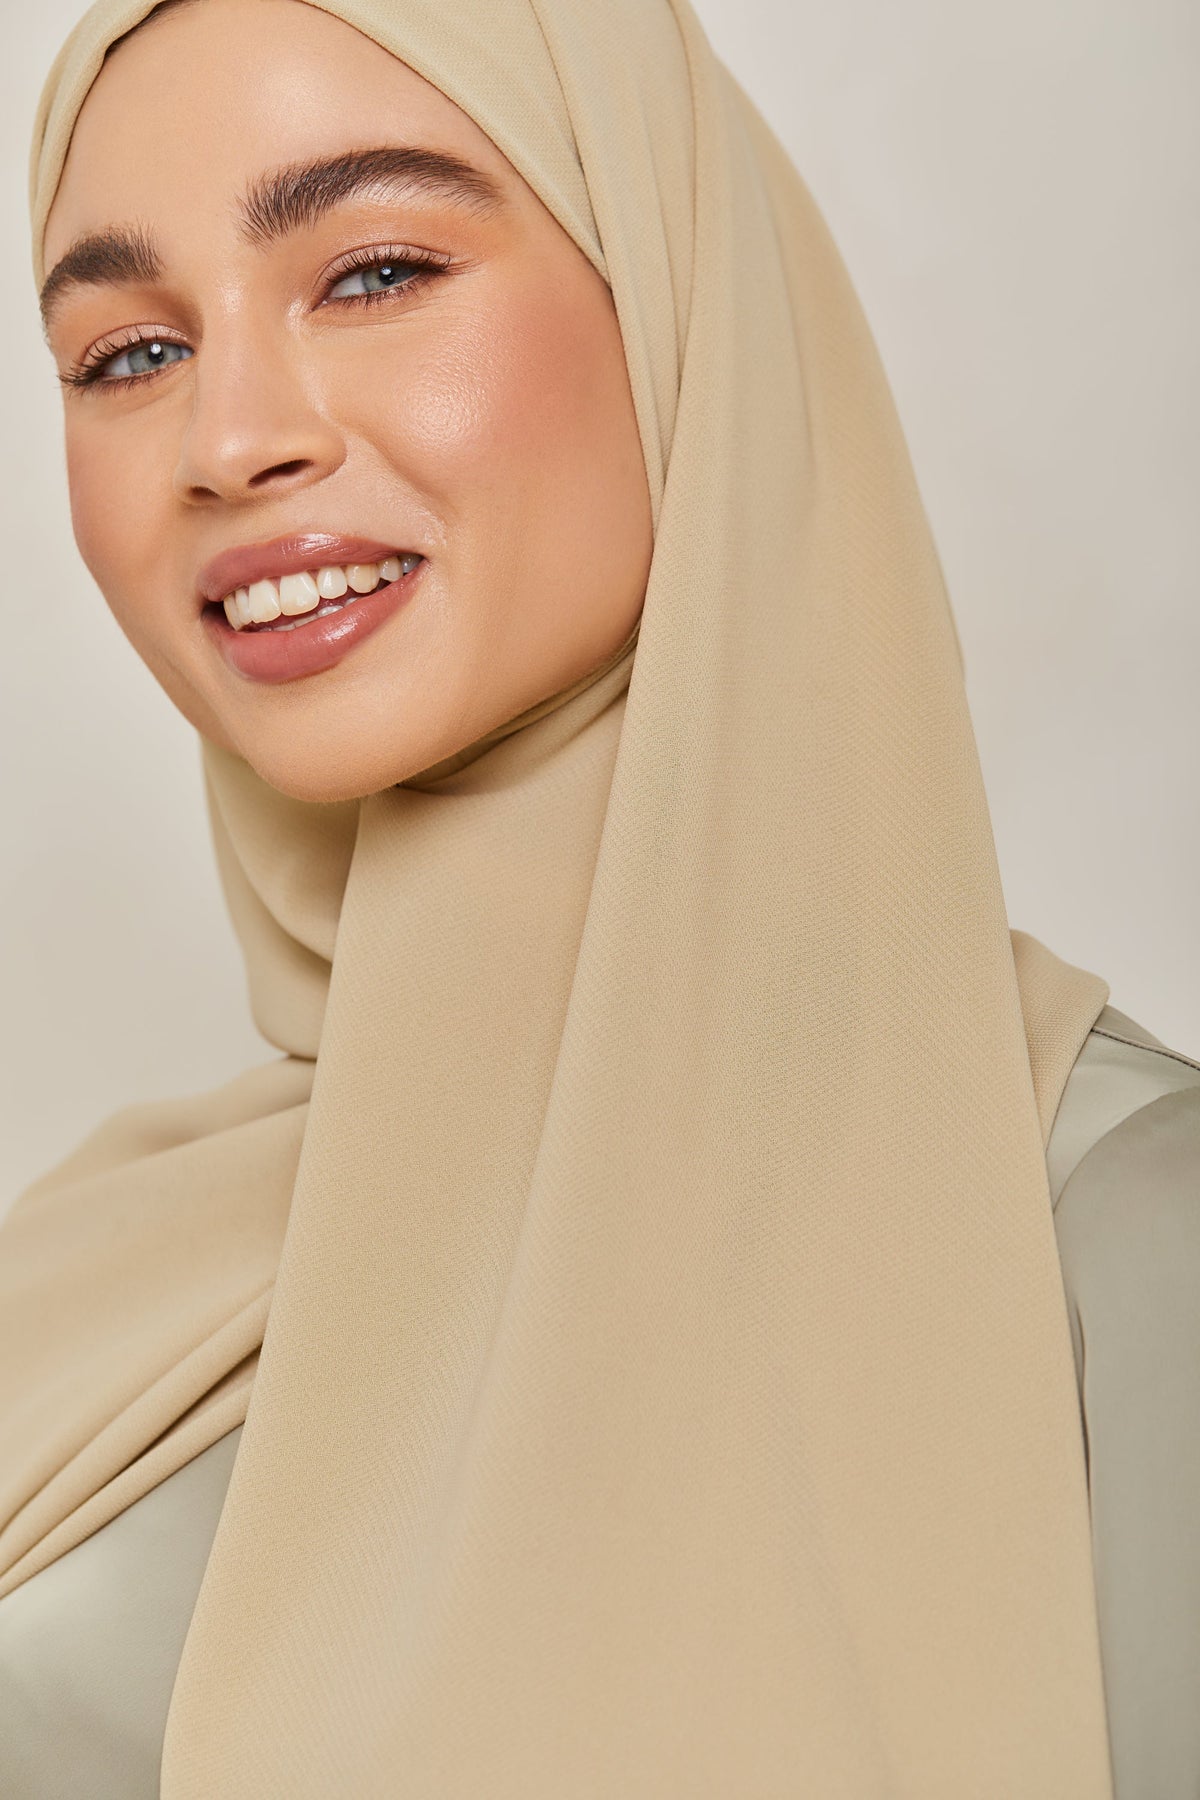 TEXTURE Twill Chiffon Hijab - Laid Back epschoolboard 